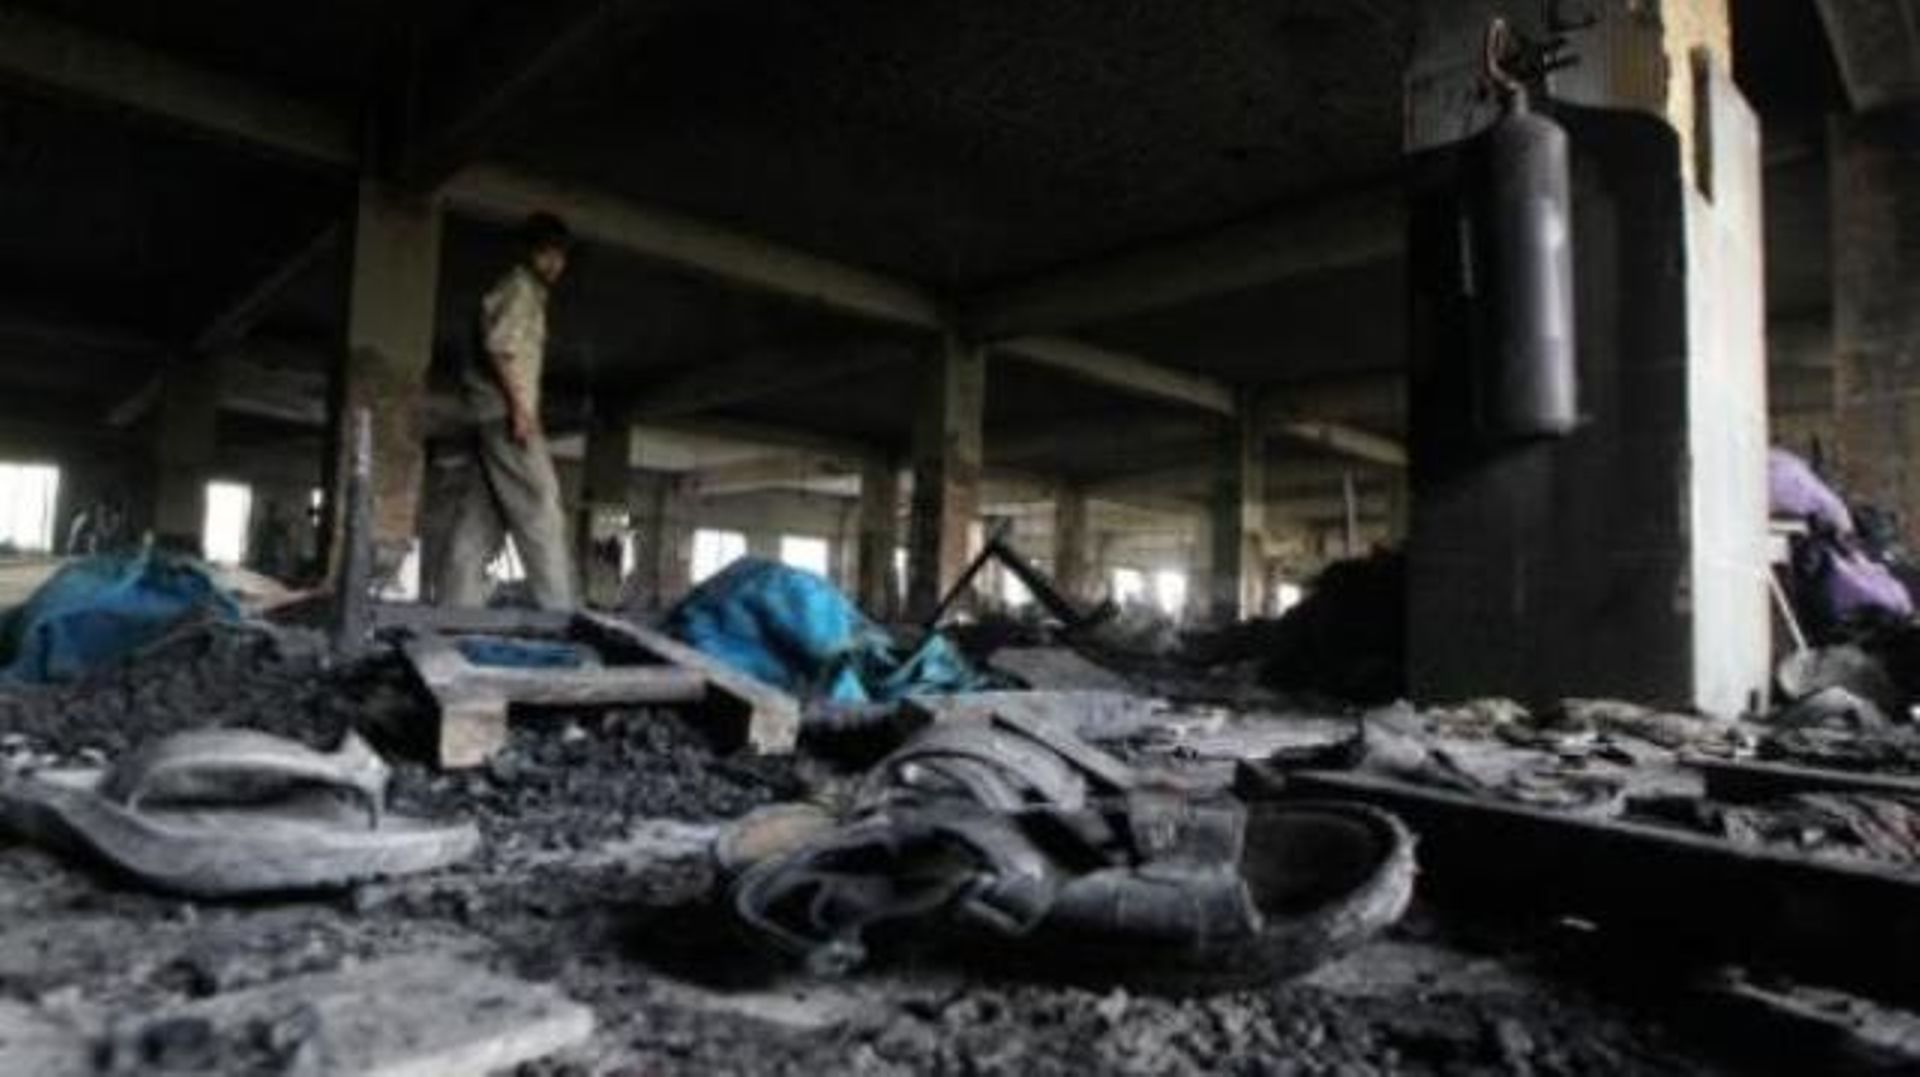 Incendie d'une usine textile au Bangladesh en 2012: les propriétaires écroués